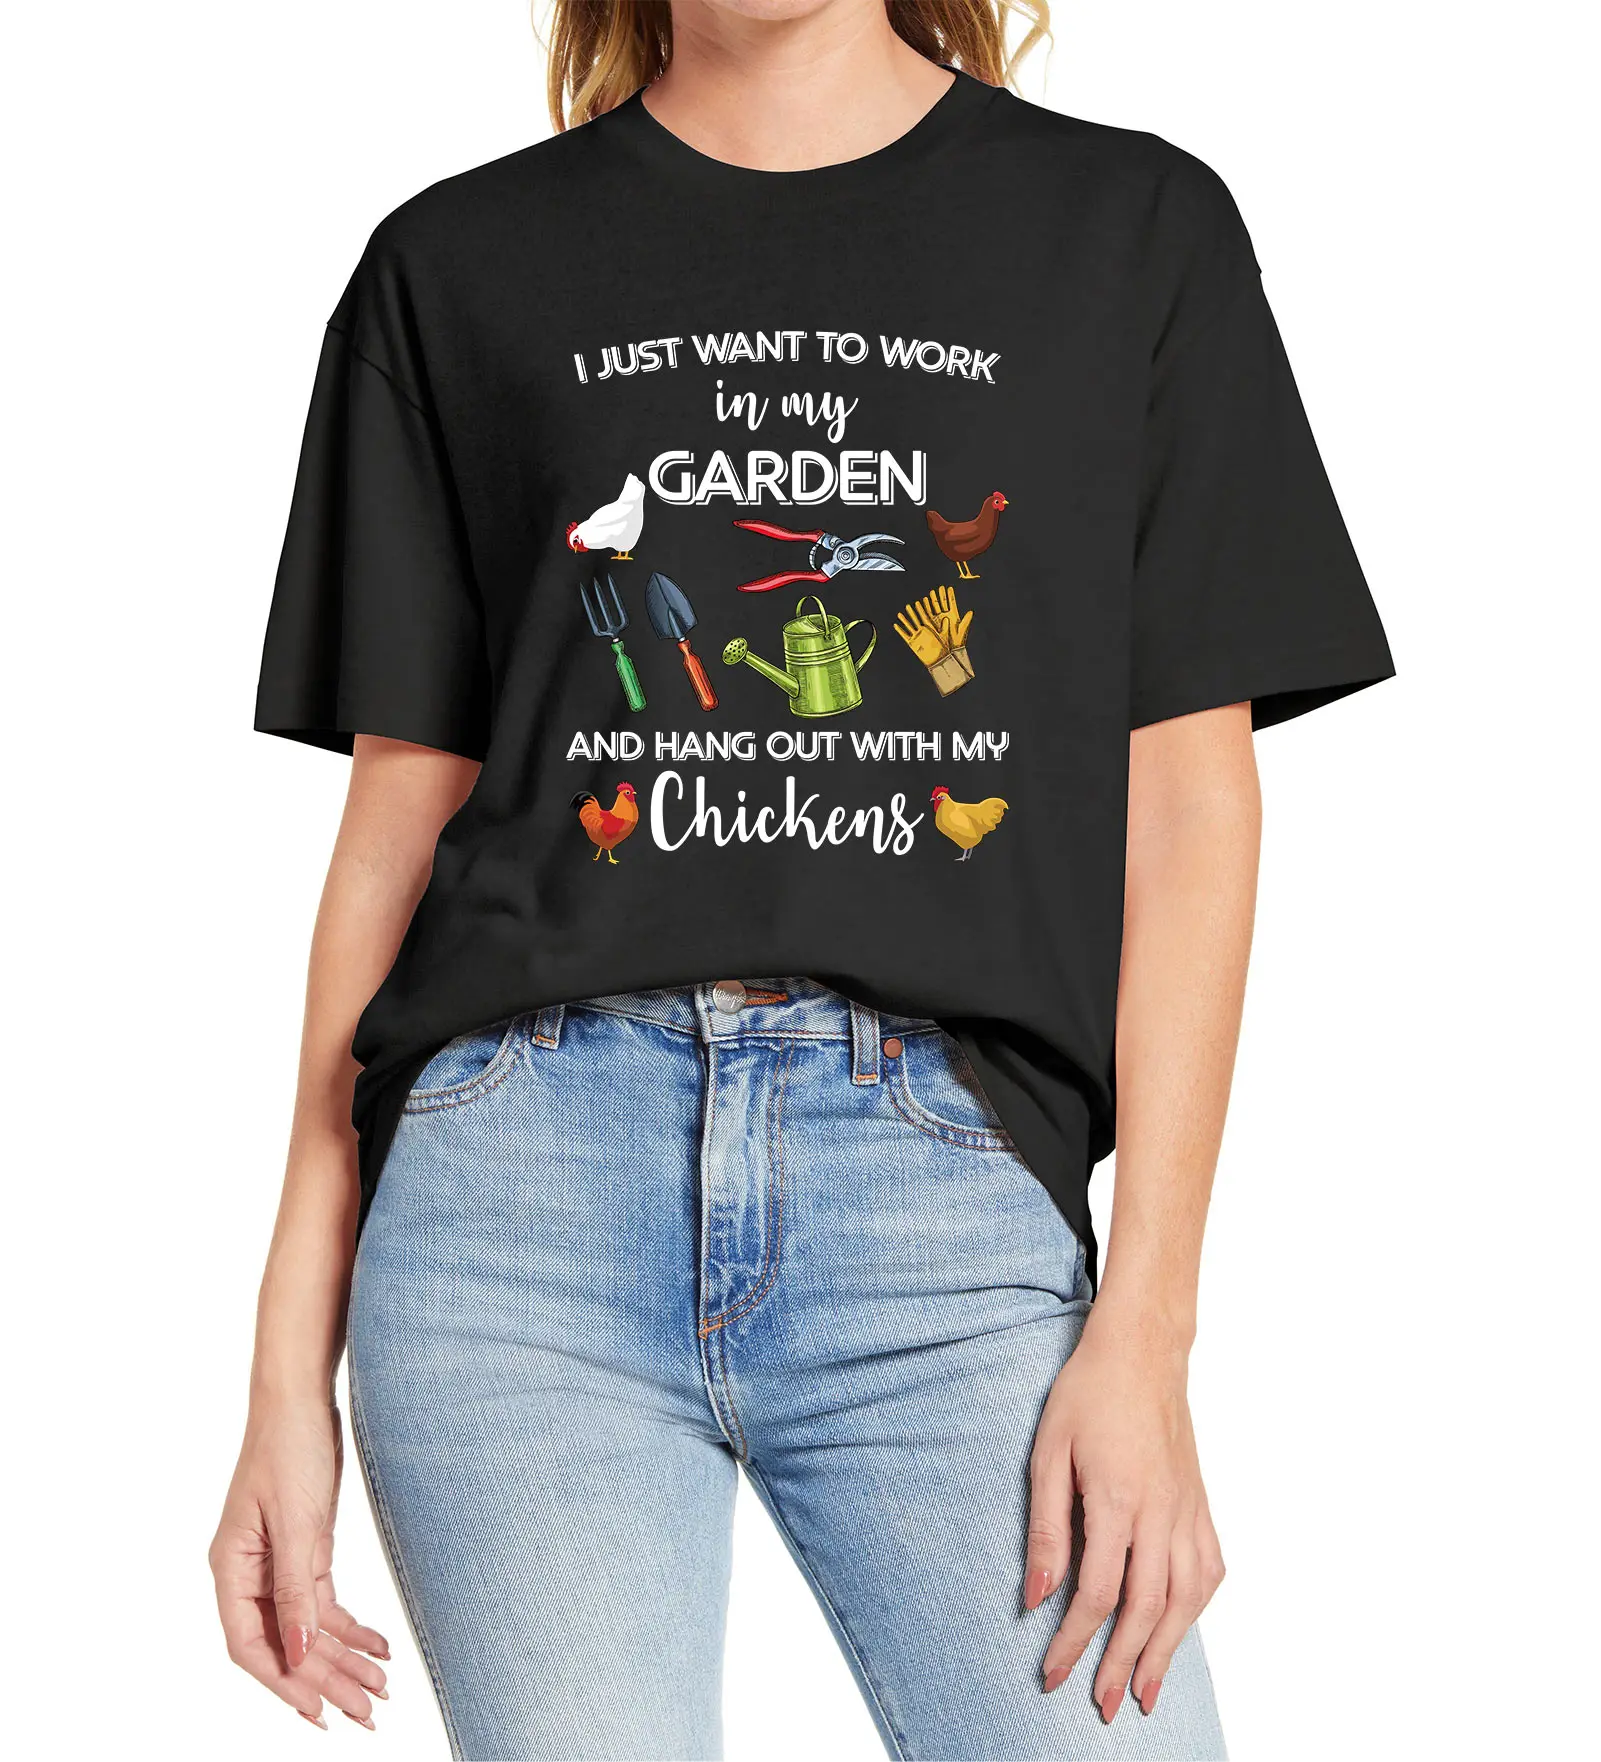 

100% хлопок, я просто хочу поработать в своем саду и разговаривать с цыплятами, забавная женская футболка фермера, мягкая футболка, подарок